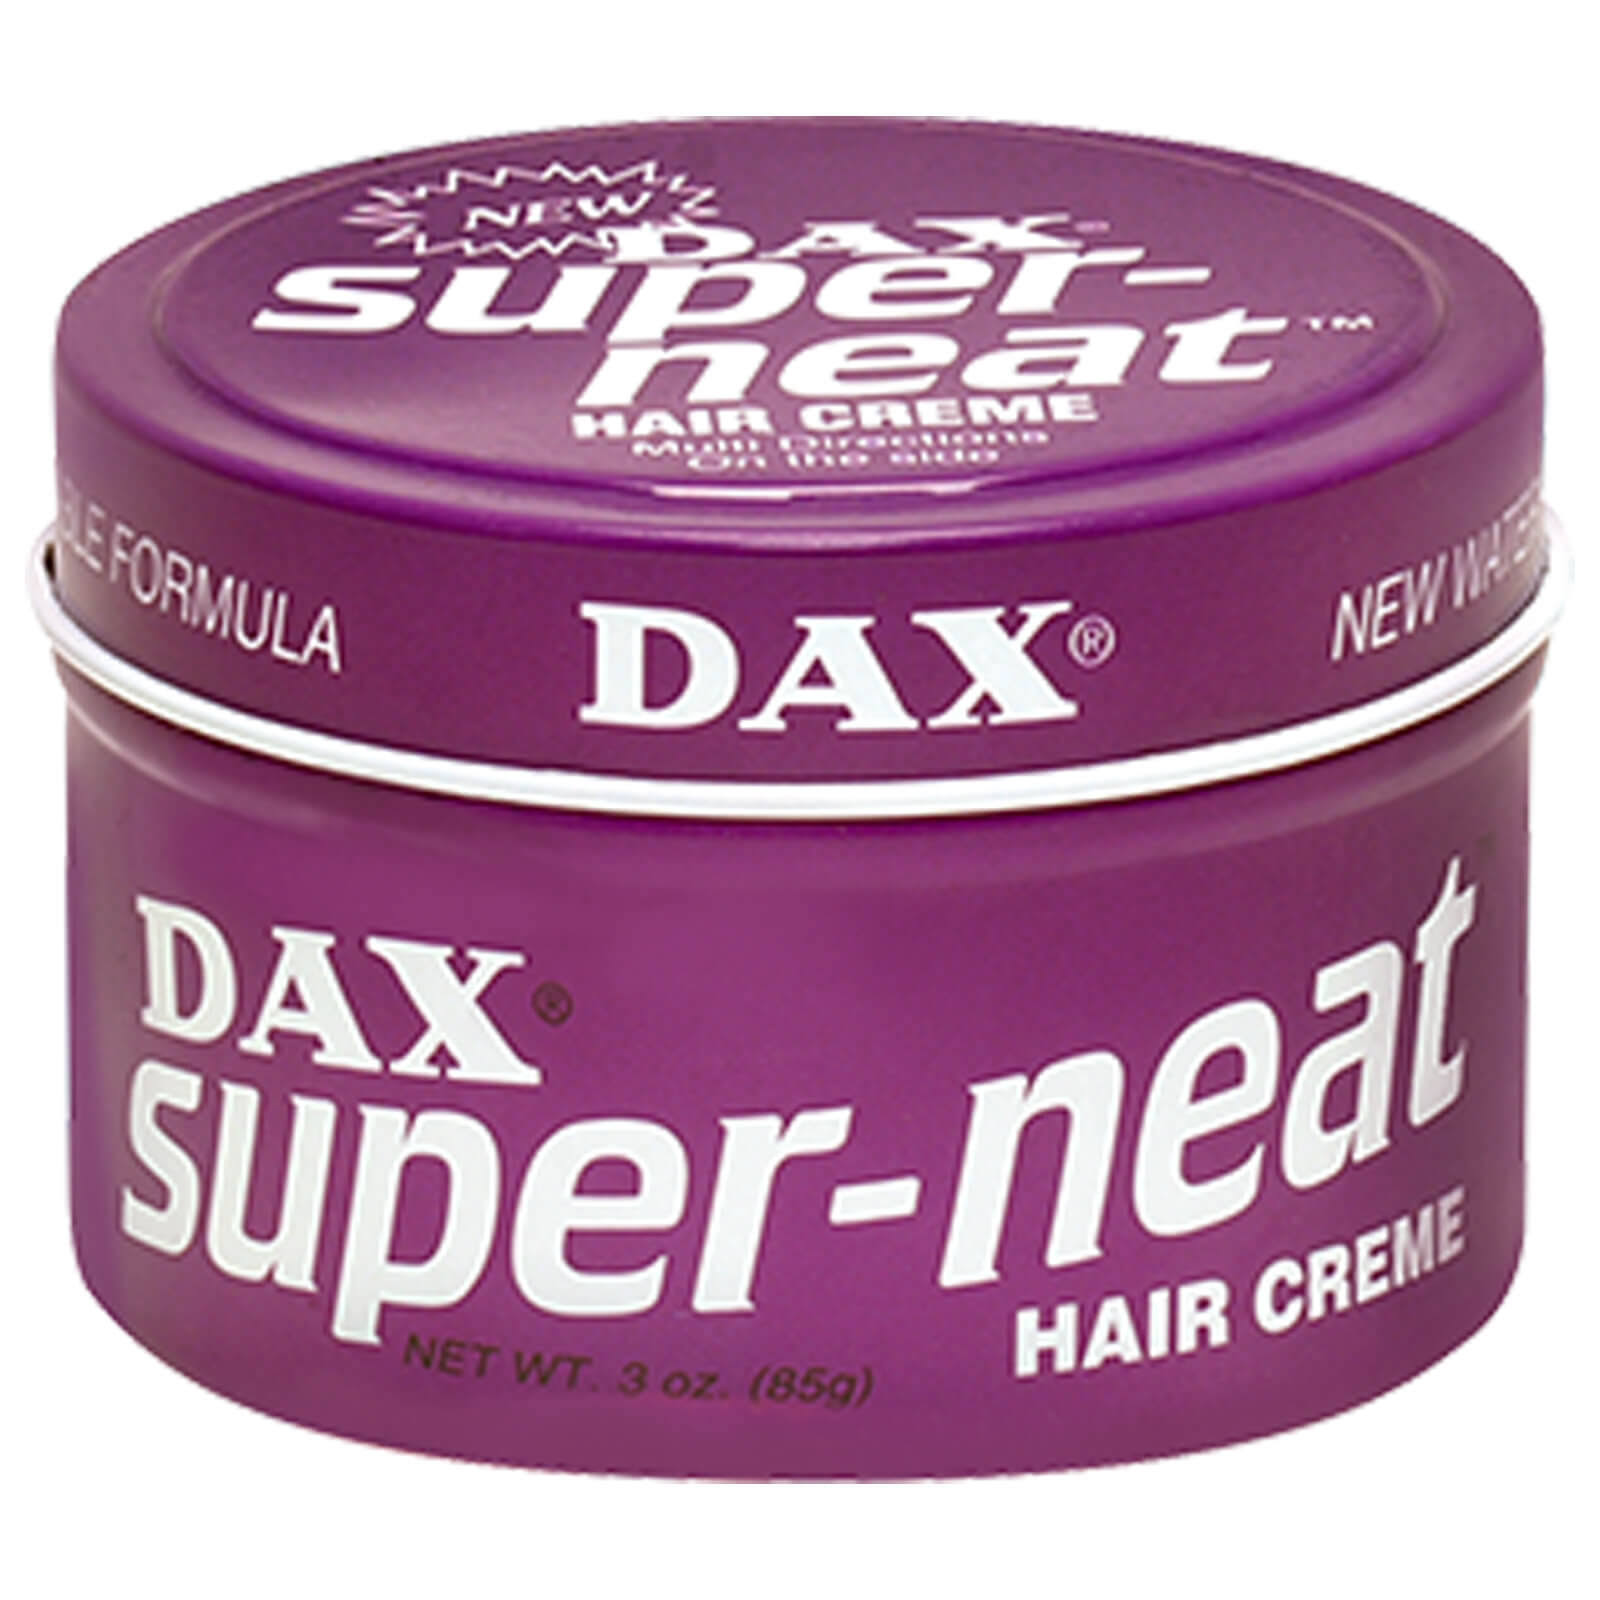 Dax Super-Neat Hair Creme